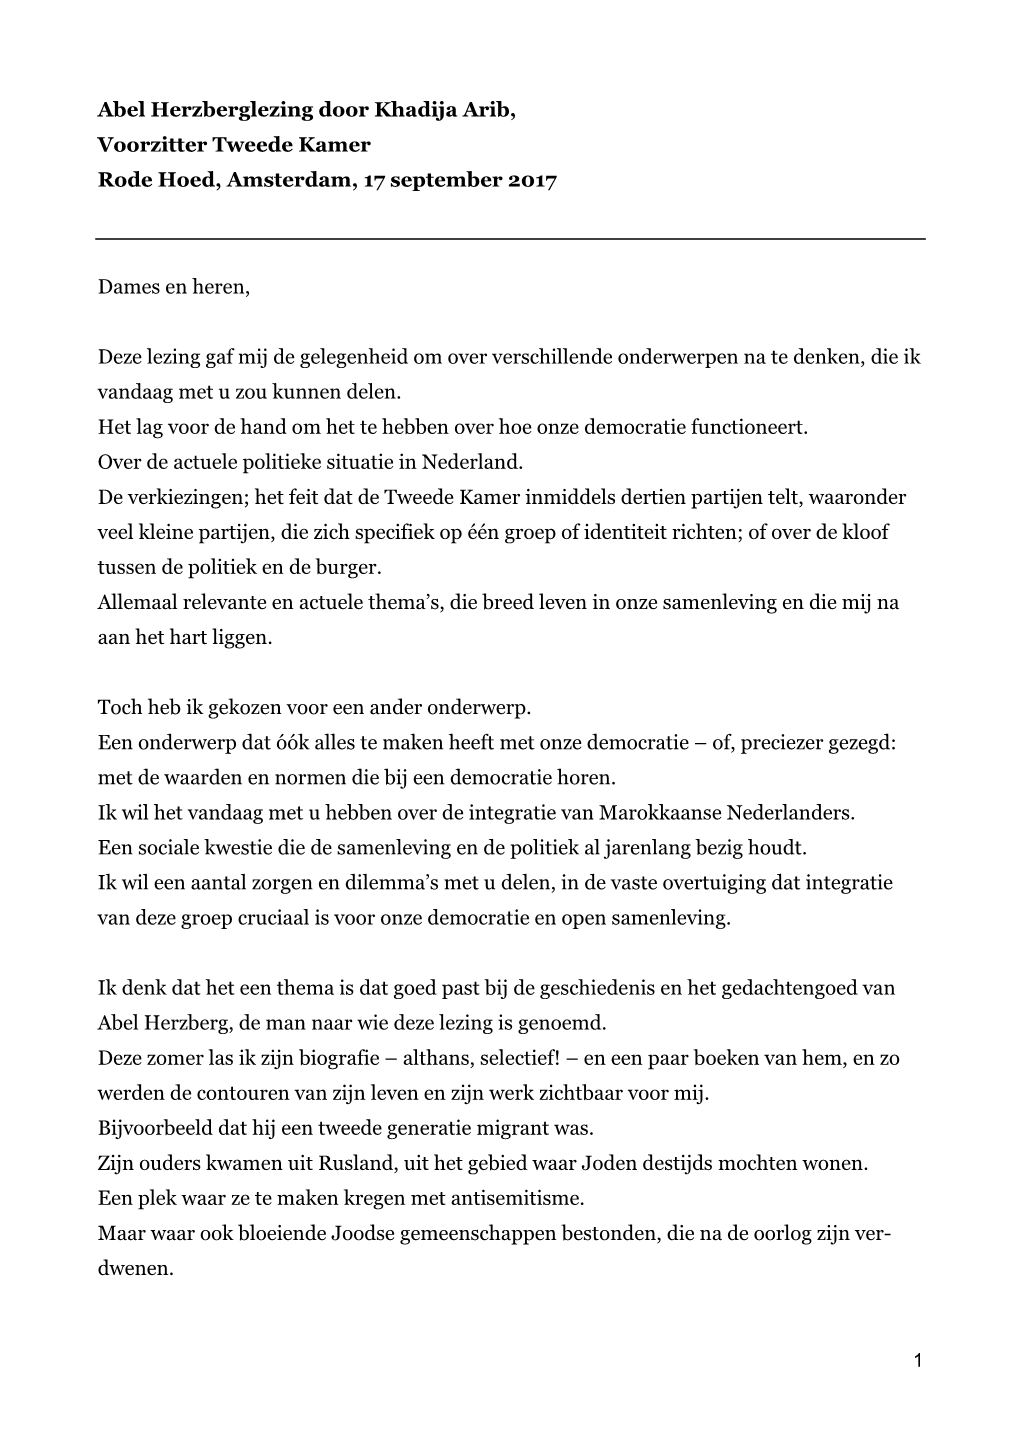 Abel Herzberglezing Door Khadija Arib, Voorzitter Tweede Kamer Rode Hoed, Amsterdam, 17 September 2017